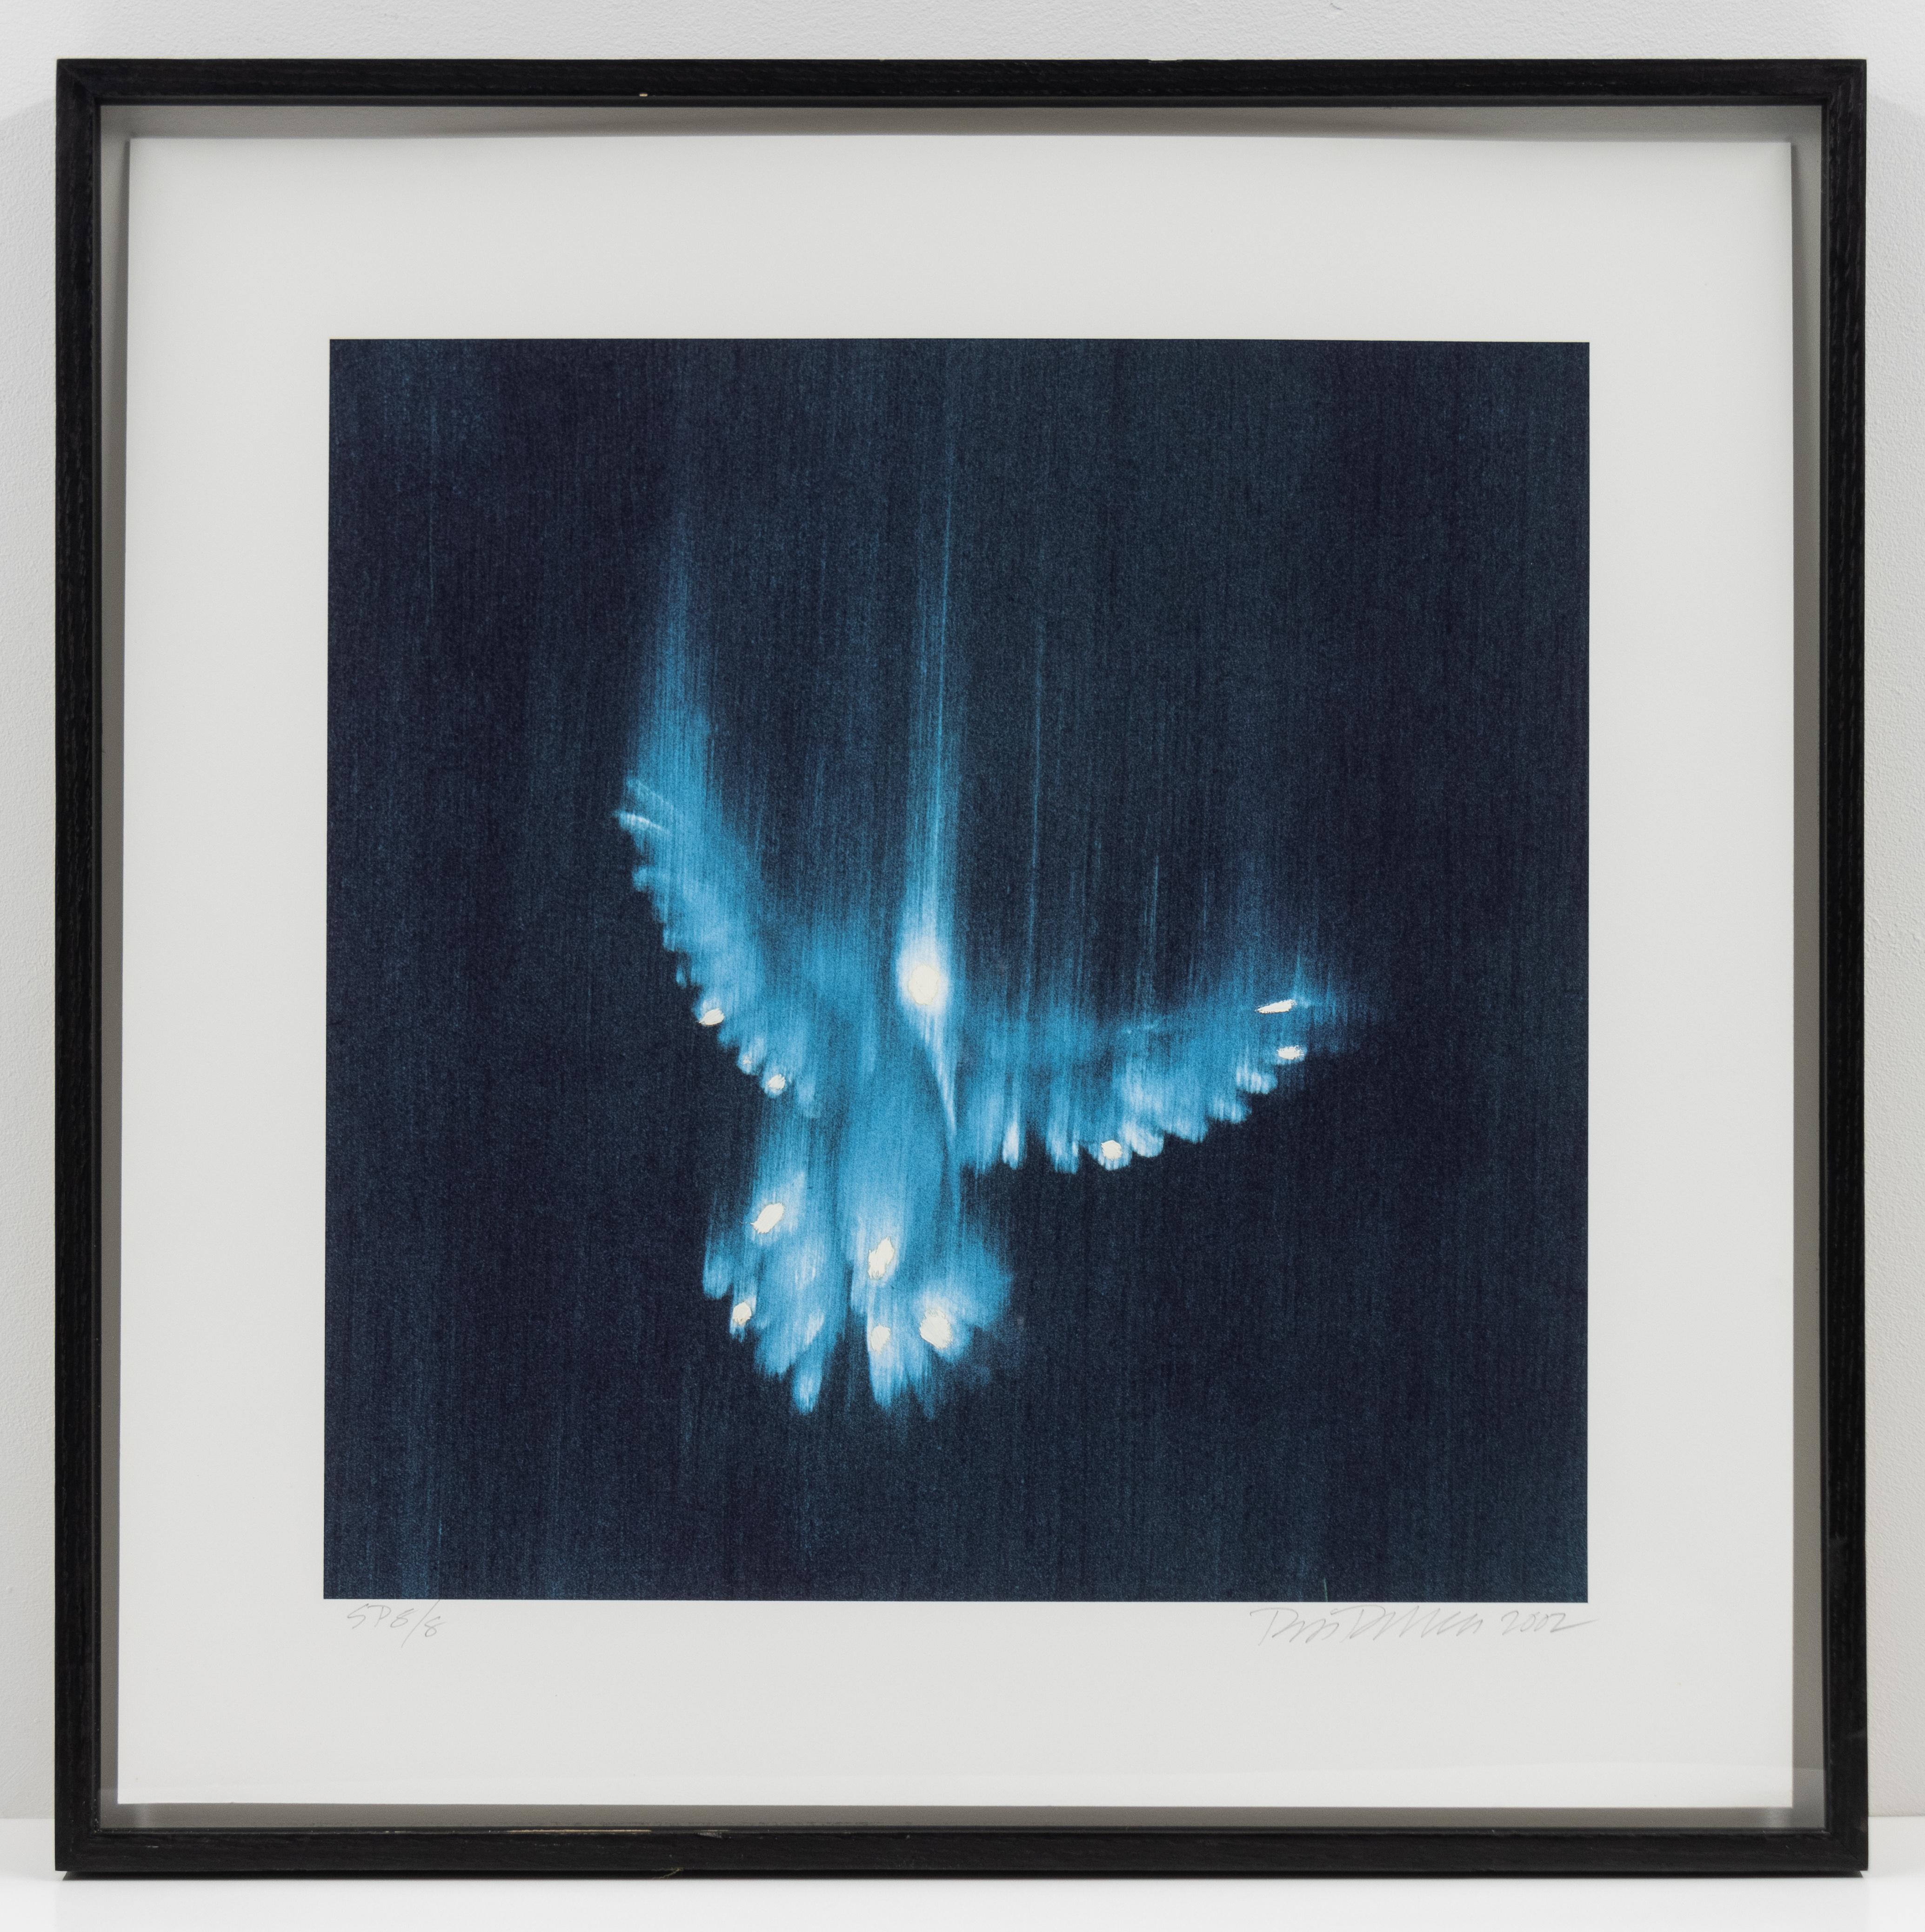 Falling Birds, 1 - Contemporary Mixed Media Art by Ross Bleckner